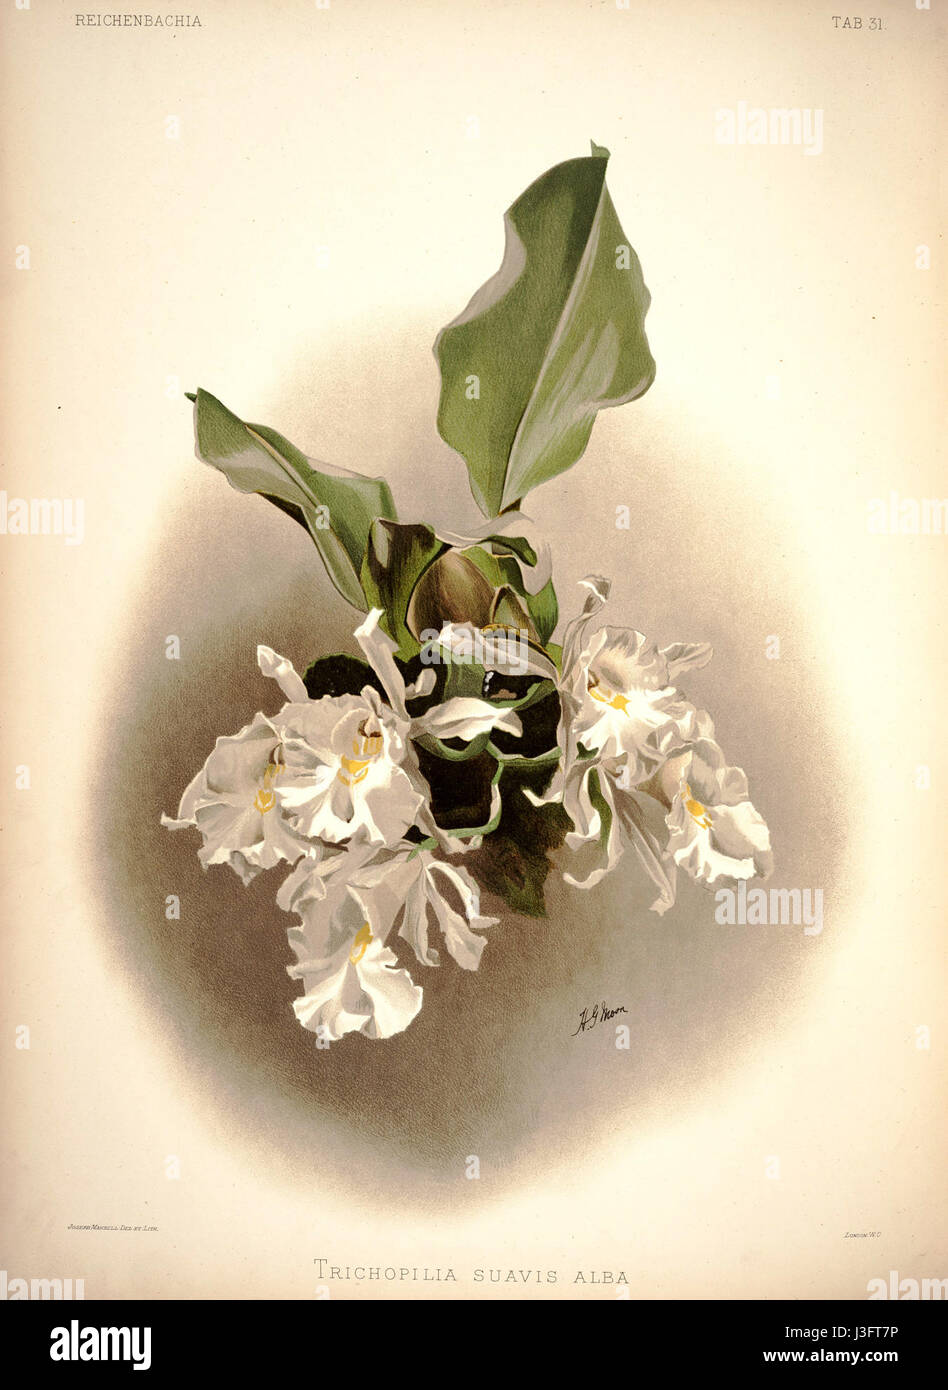 Frederick Sander   Reichenbachia I plate 31 (1888)   Trichopilia suavis alba Stock Photo